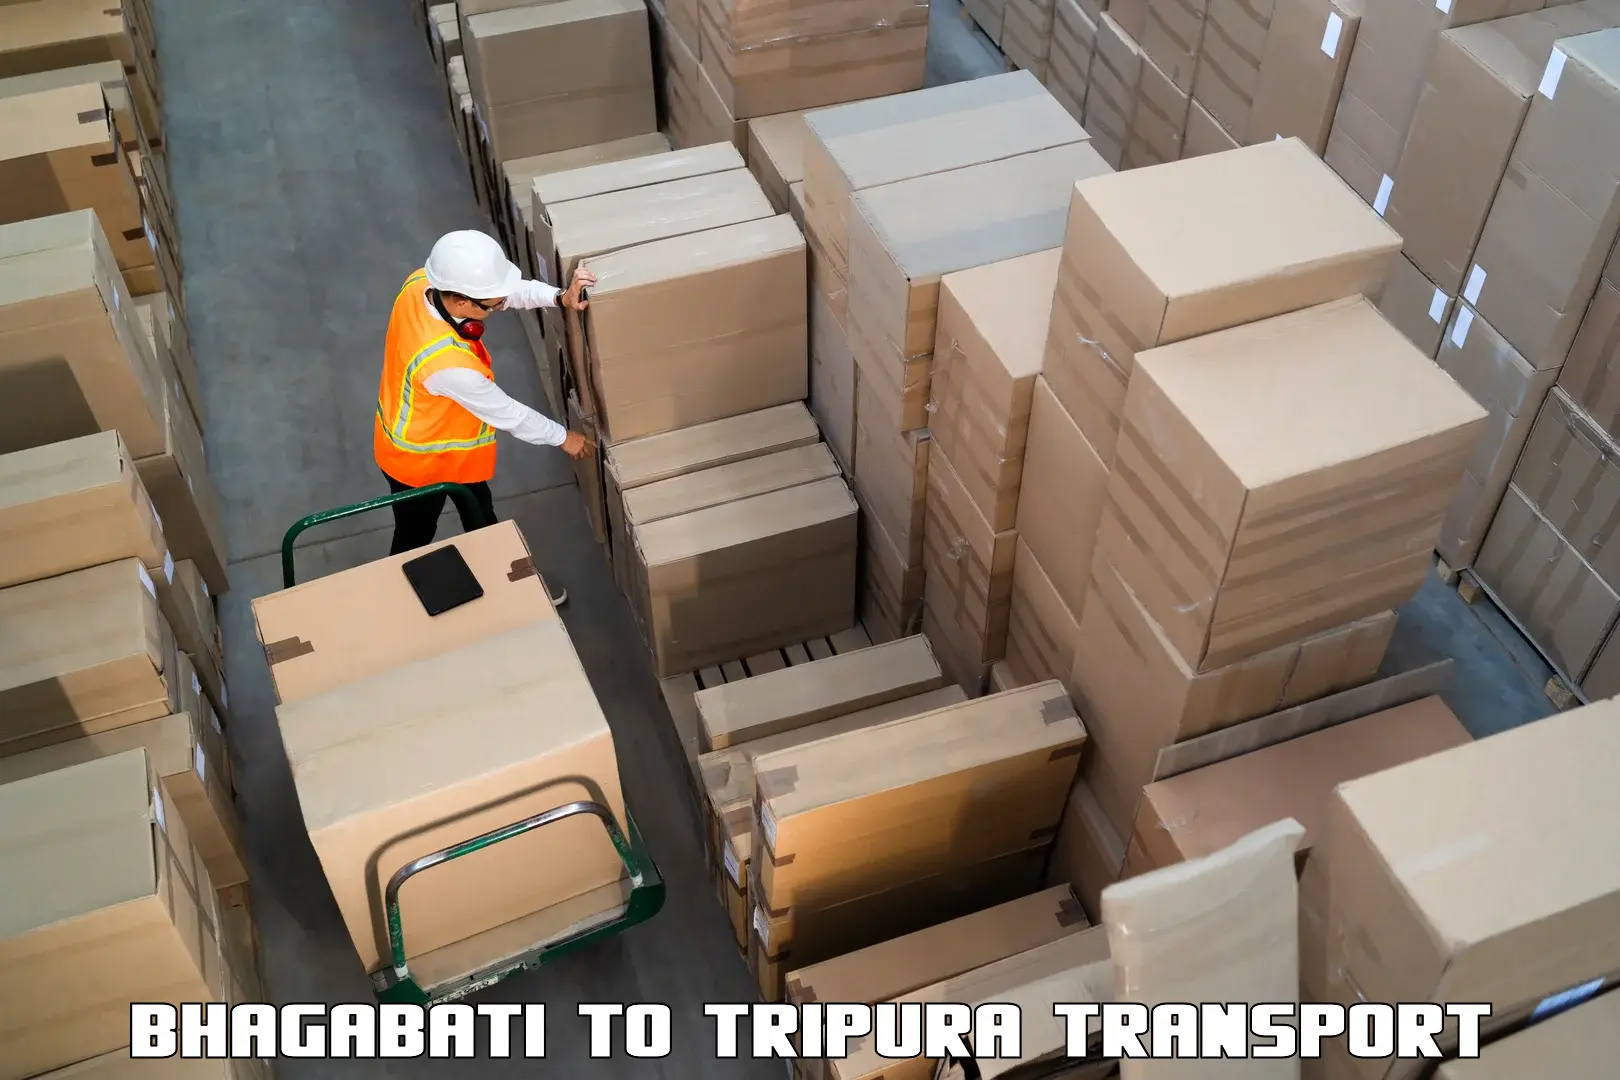 Container transport service Bhagabati to West Tripura